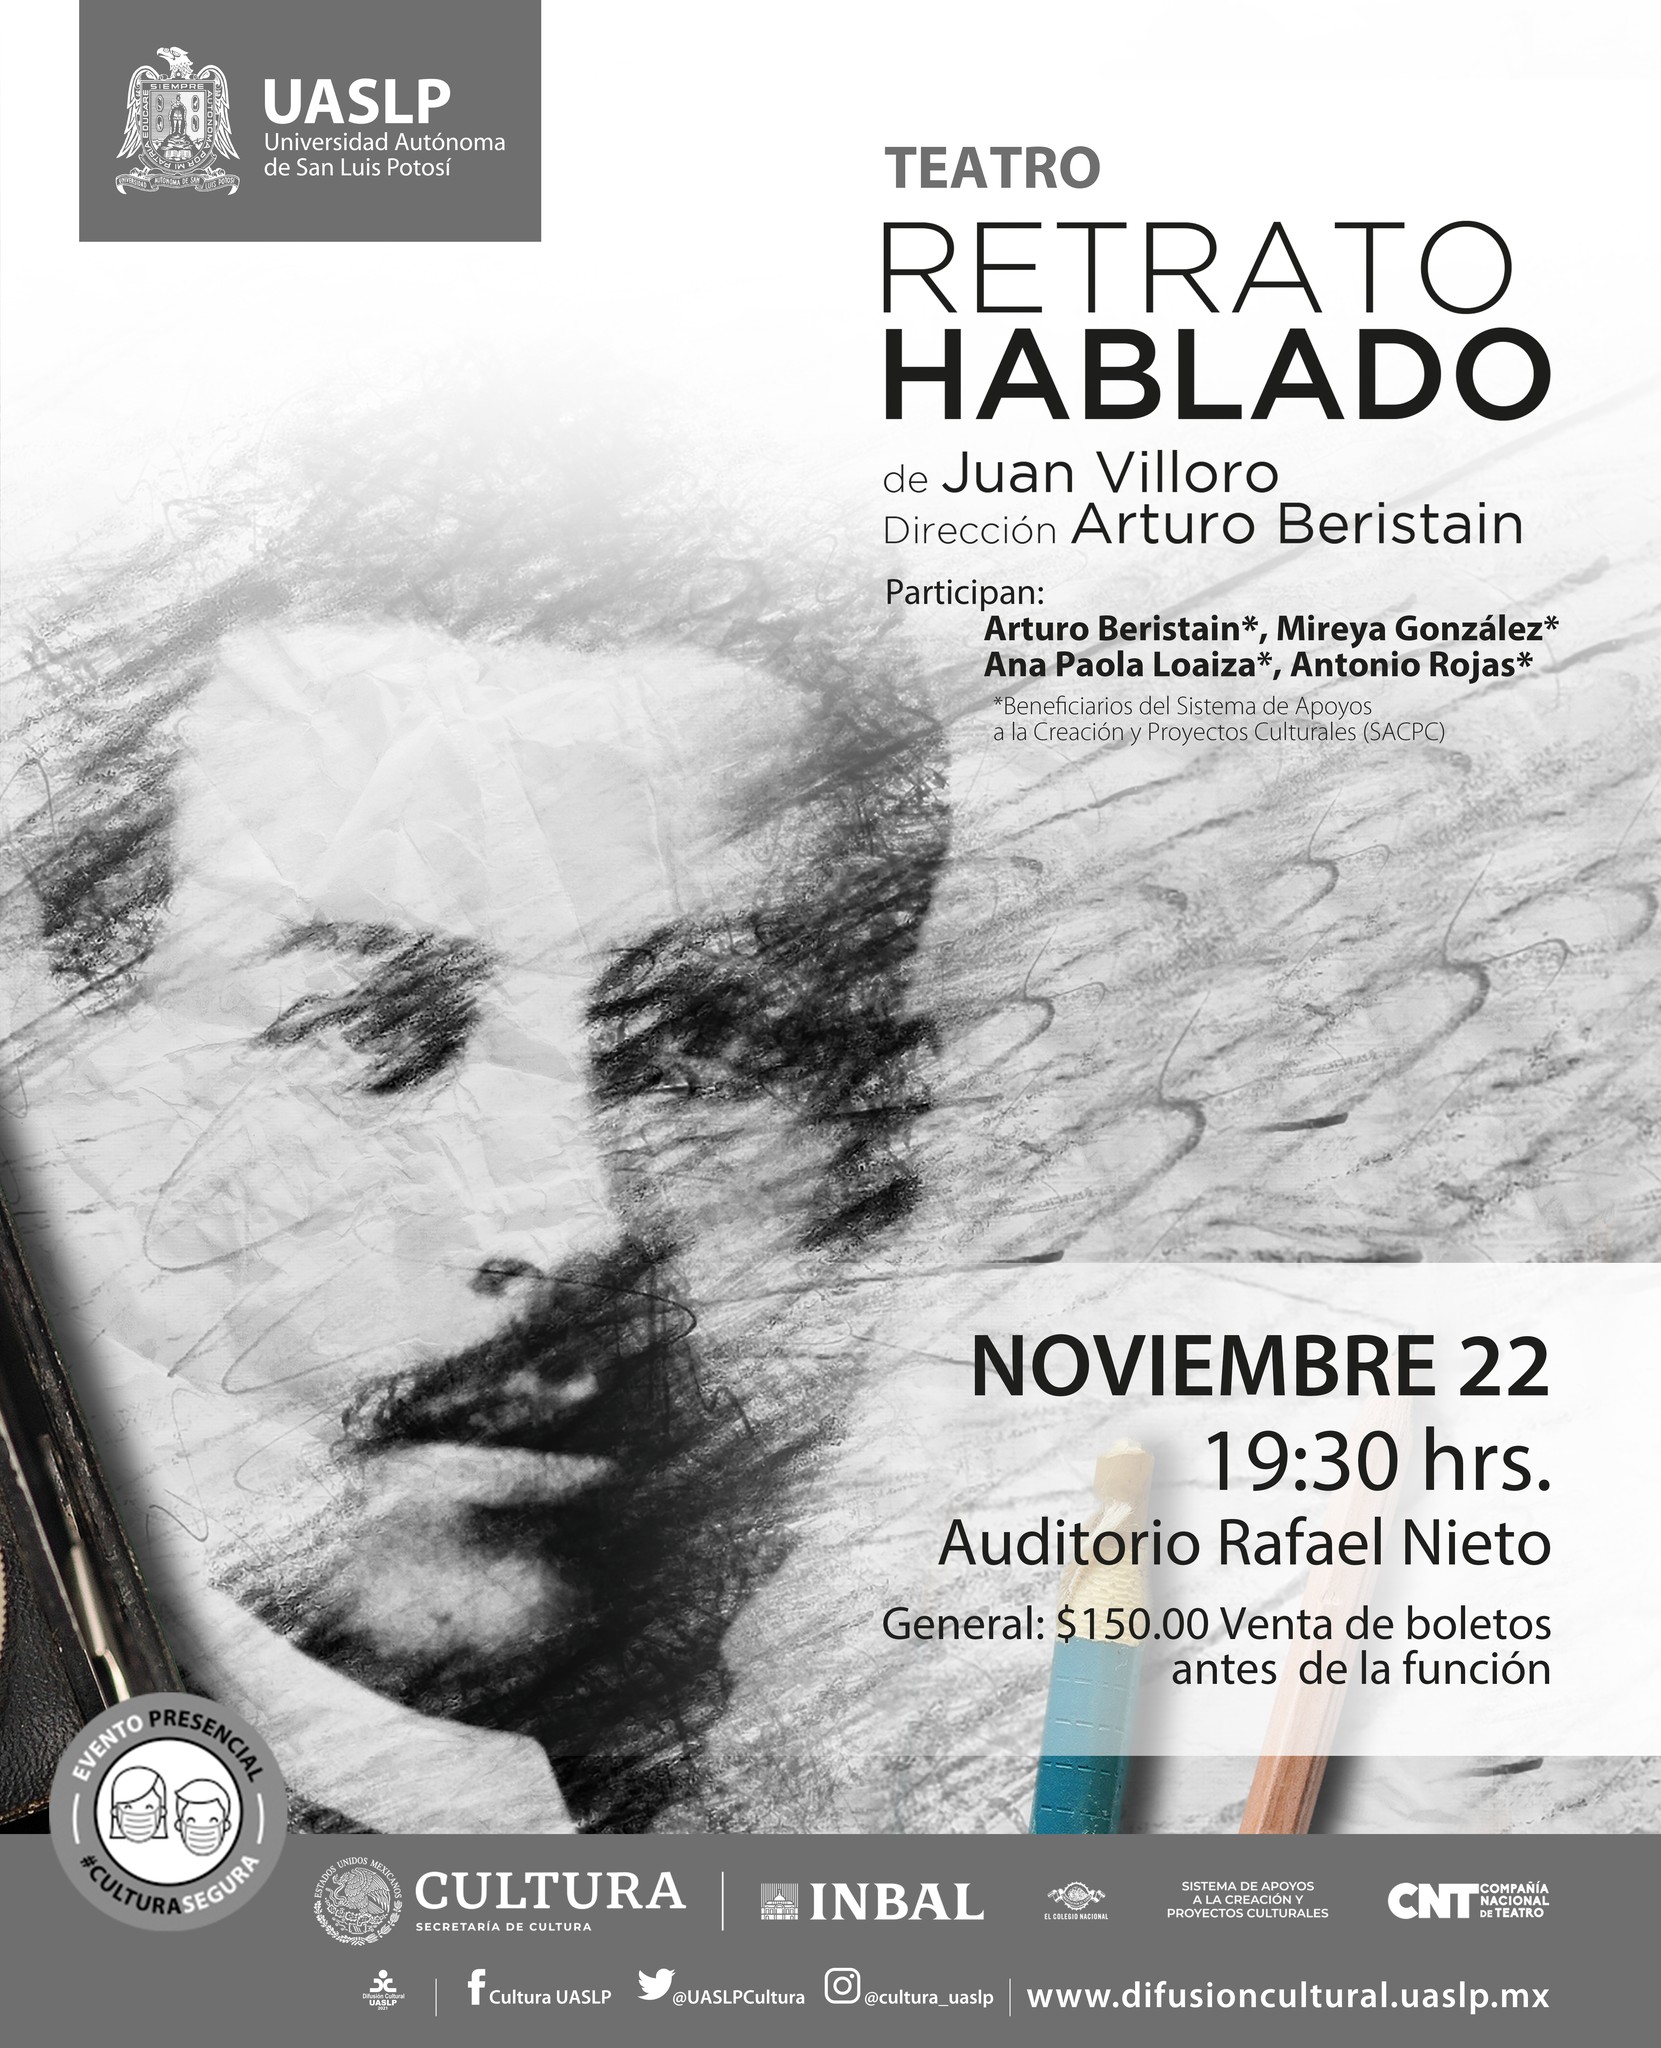 Presentarán la obra de teatro “Retrato hablado”, el próximo lunes 22 de noviembre a las 19:30 hrs. en el Auditorio “Rafael Nieto”.